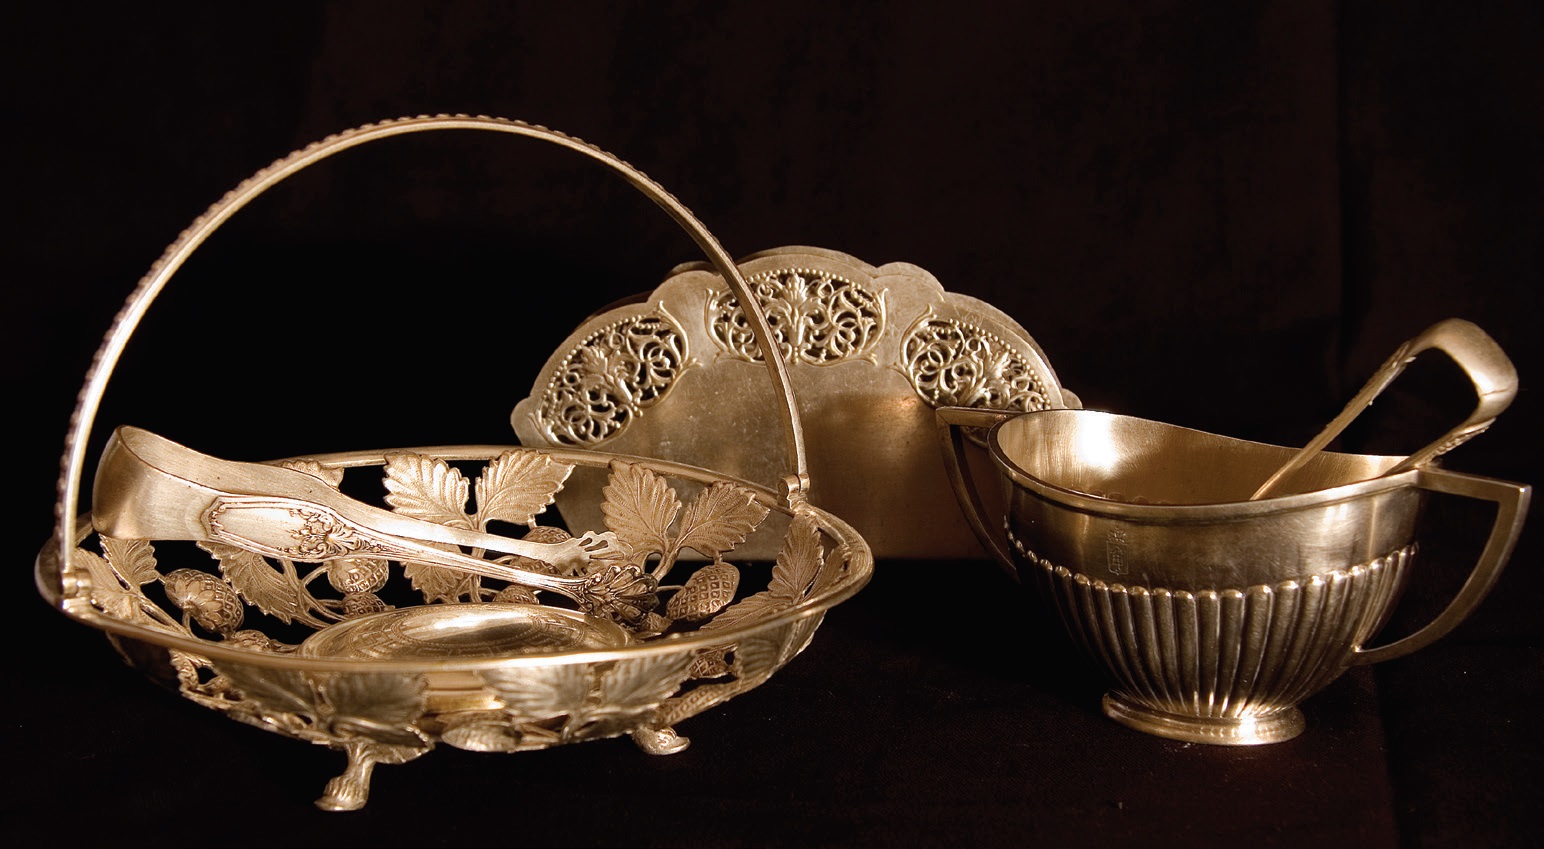 Stalo sidabras, tarp jų – krepšelis desertams patiekti, cukraus žnyplės. Rokiškio krašto muziejus